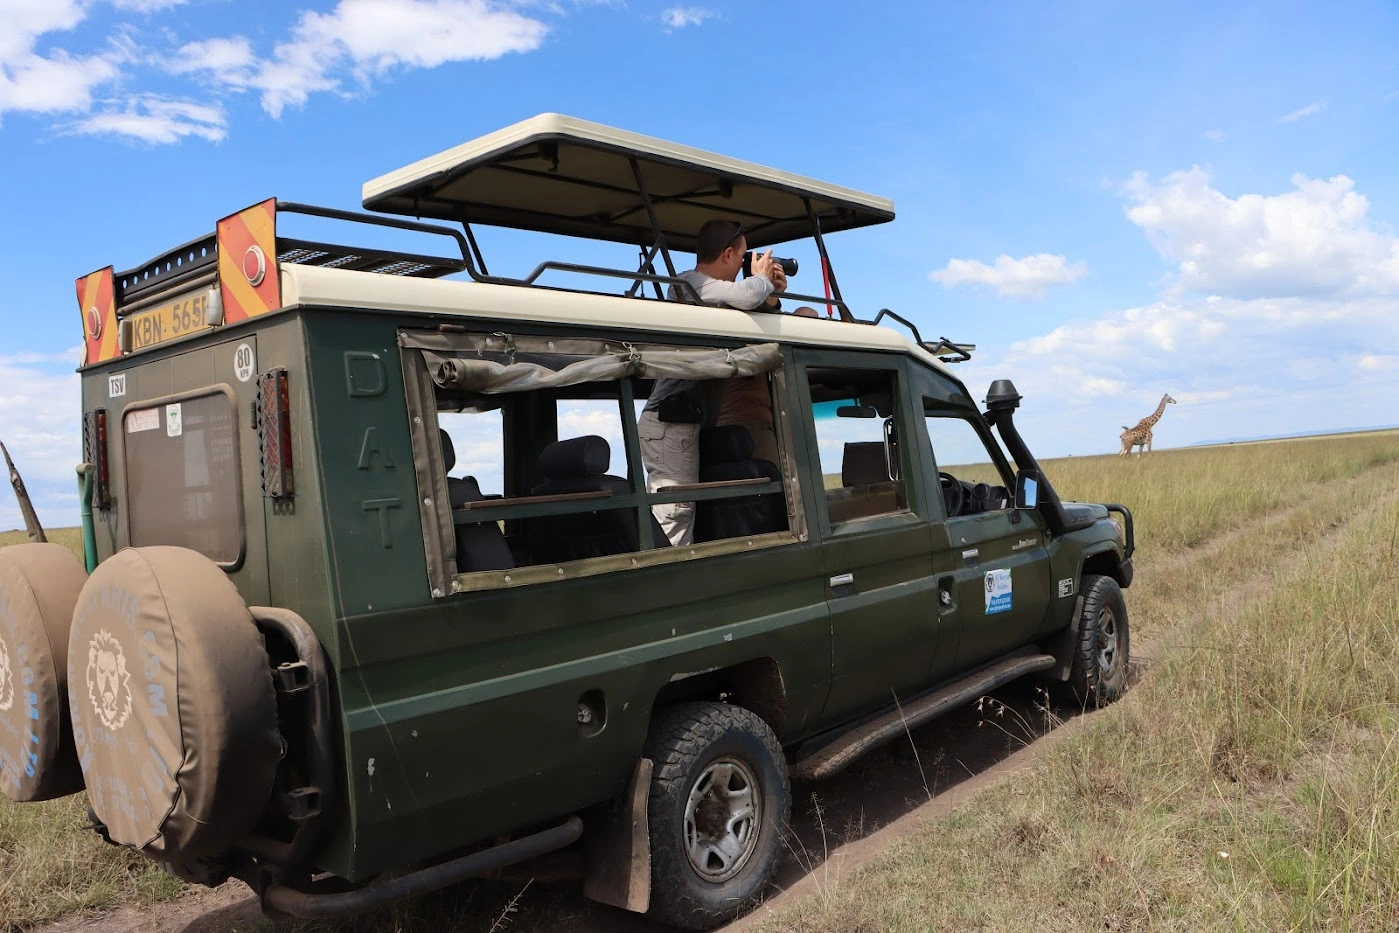 Safari honeymoon in Kenya - Our clients on a Masai Mara Hot Air Balloon Safari.